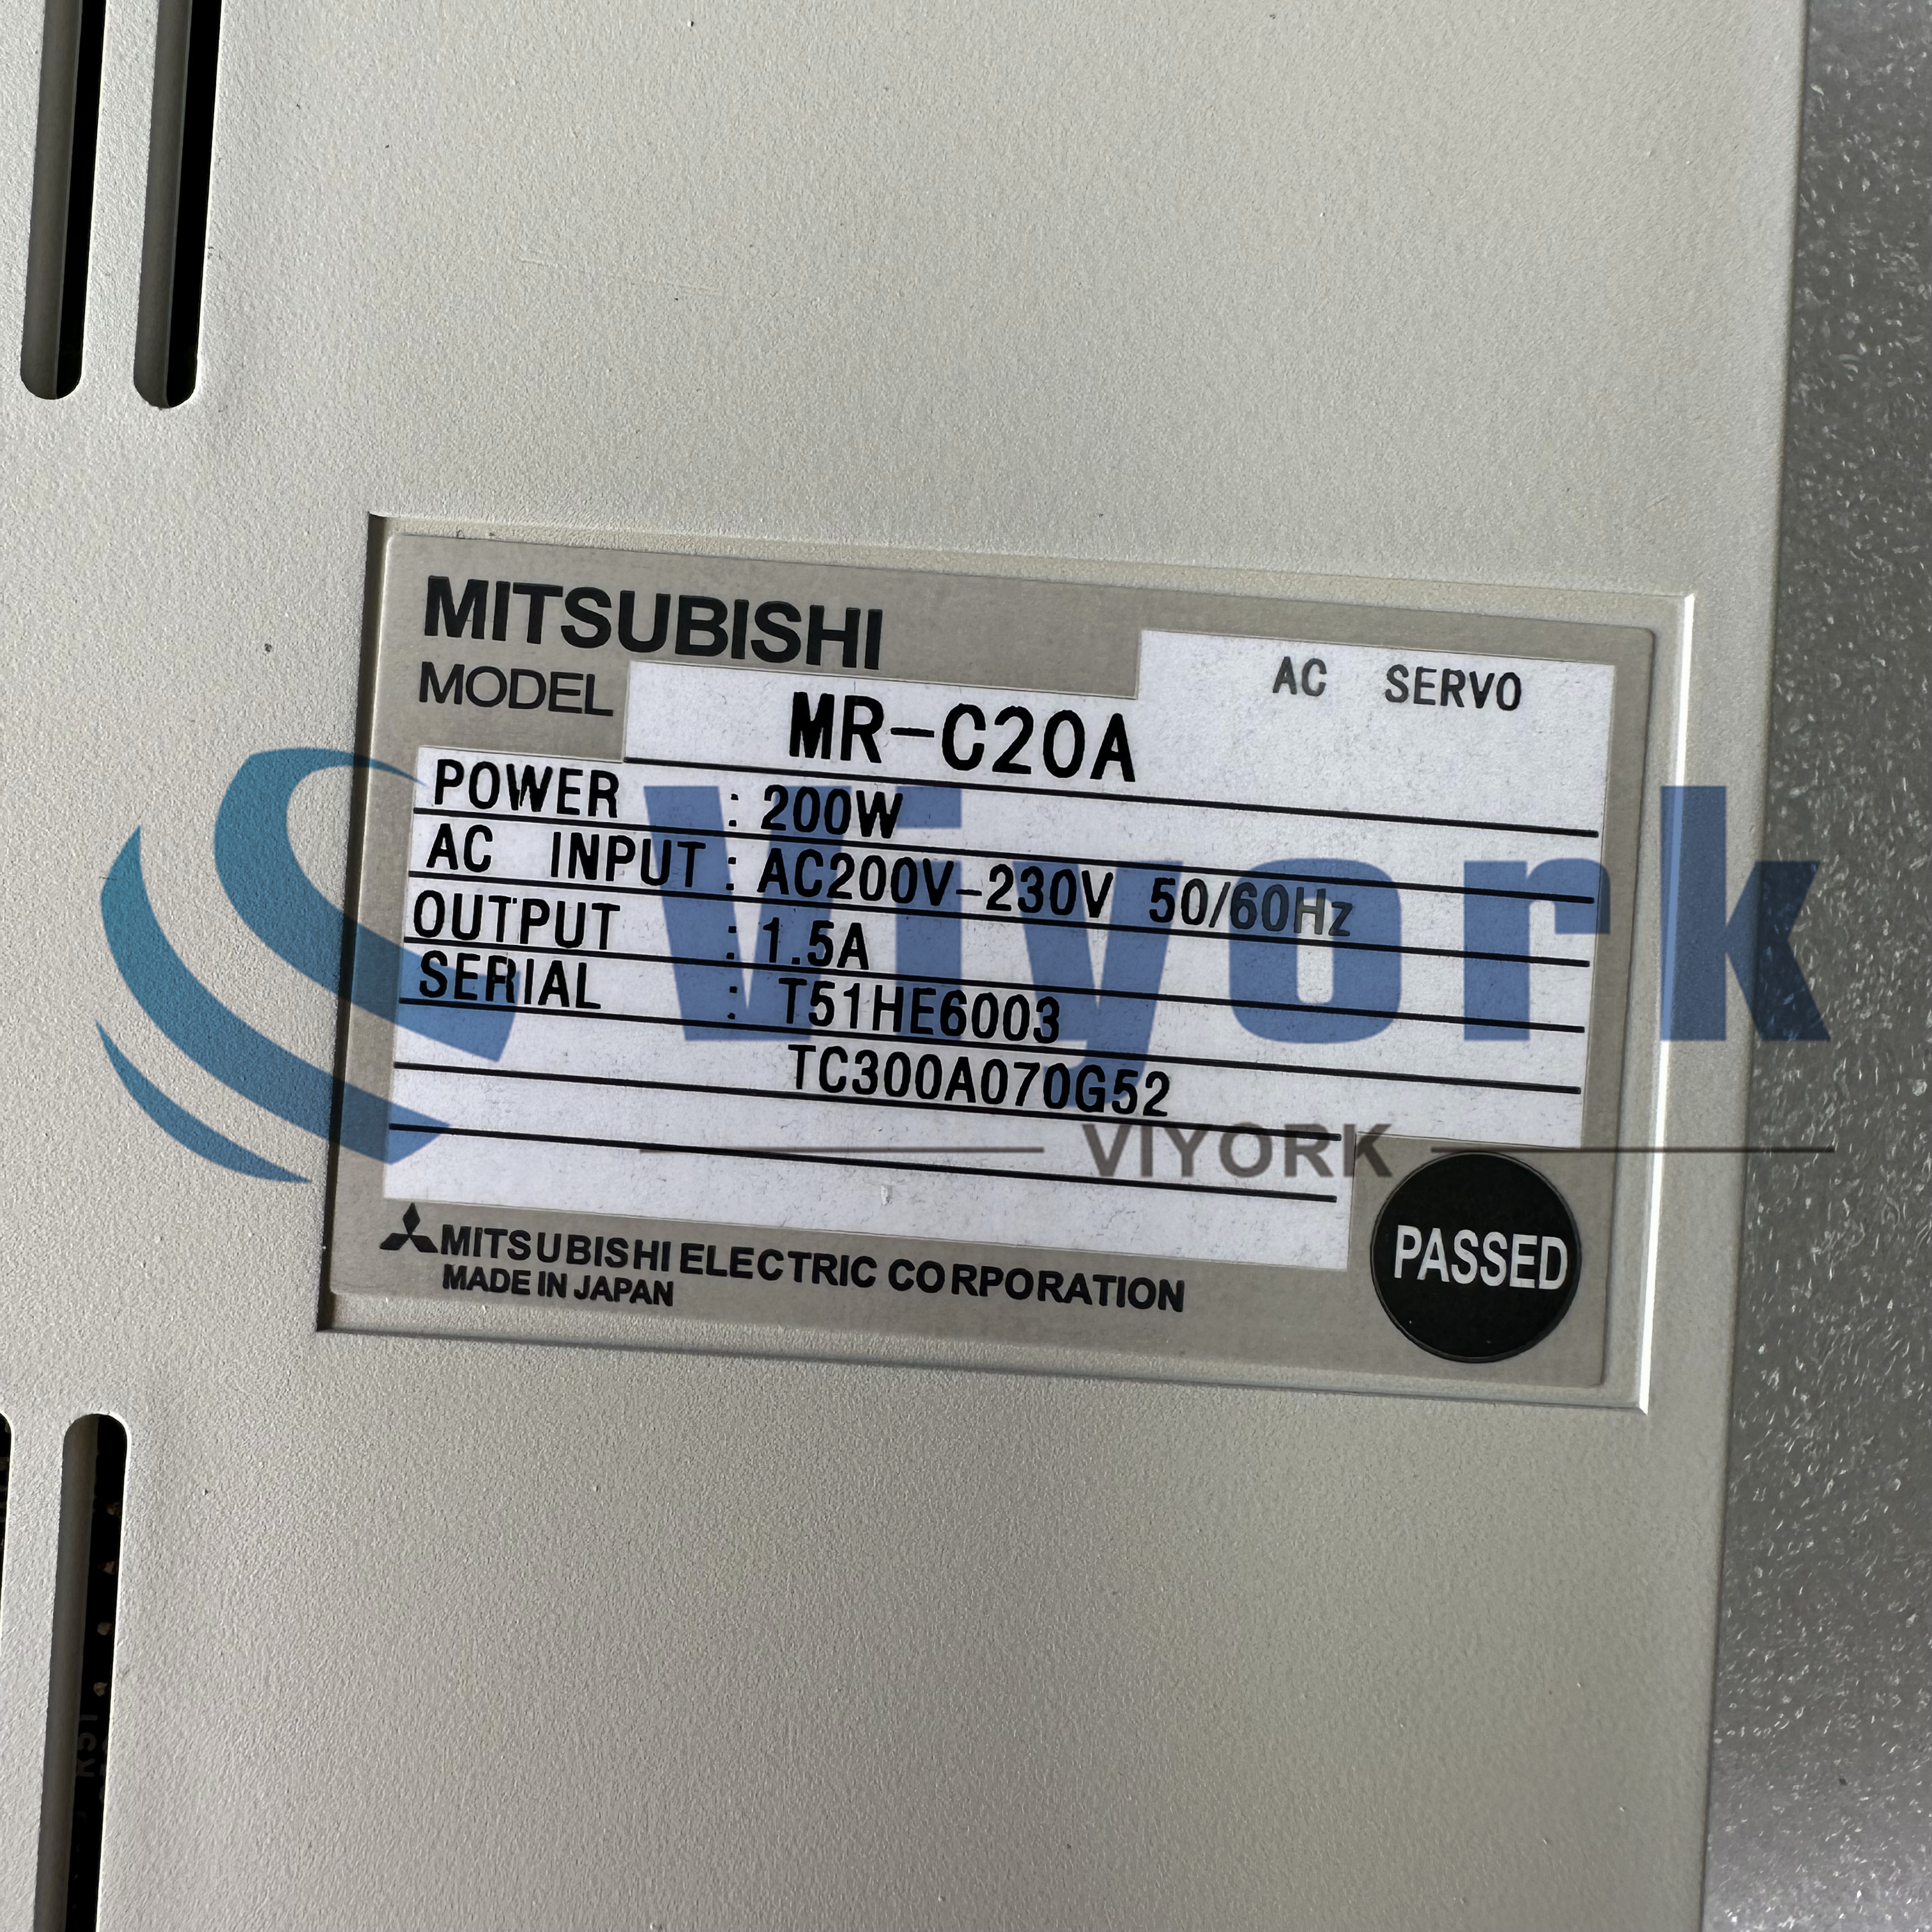 Mitsubishi MR-C20A SERVO DRIVE 1.5 AMP 200-230 VAC 50/60 HZ 200 WATT NEW